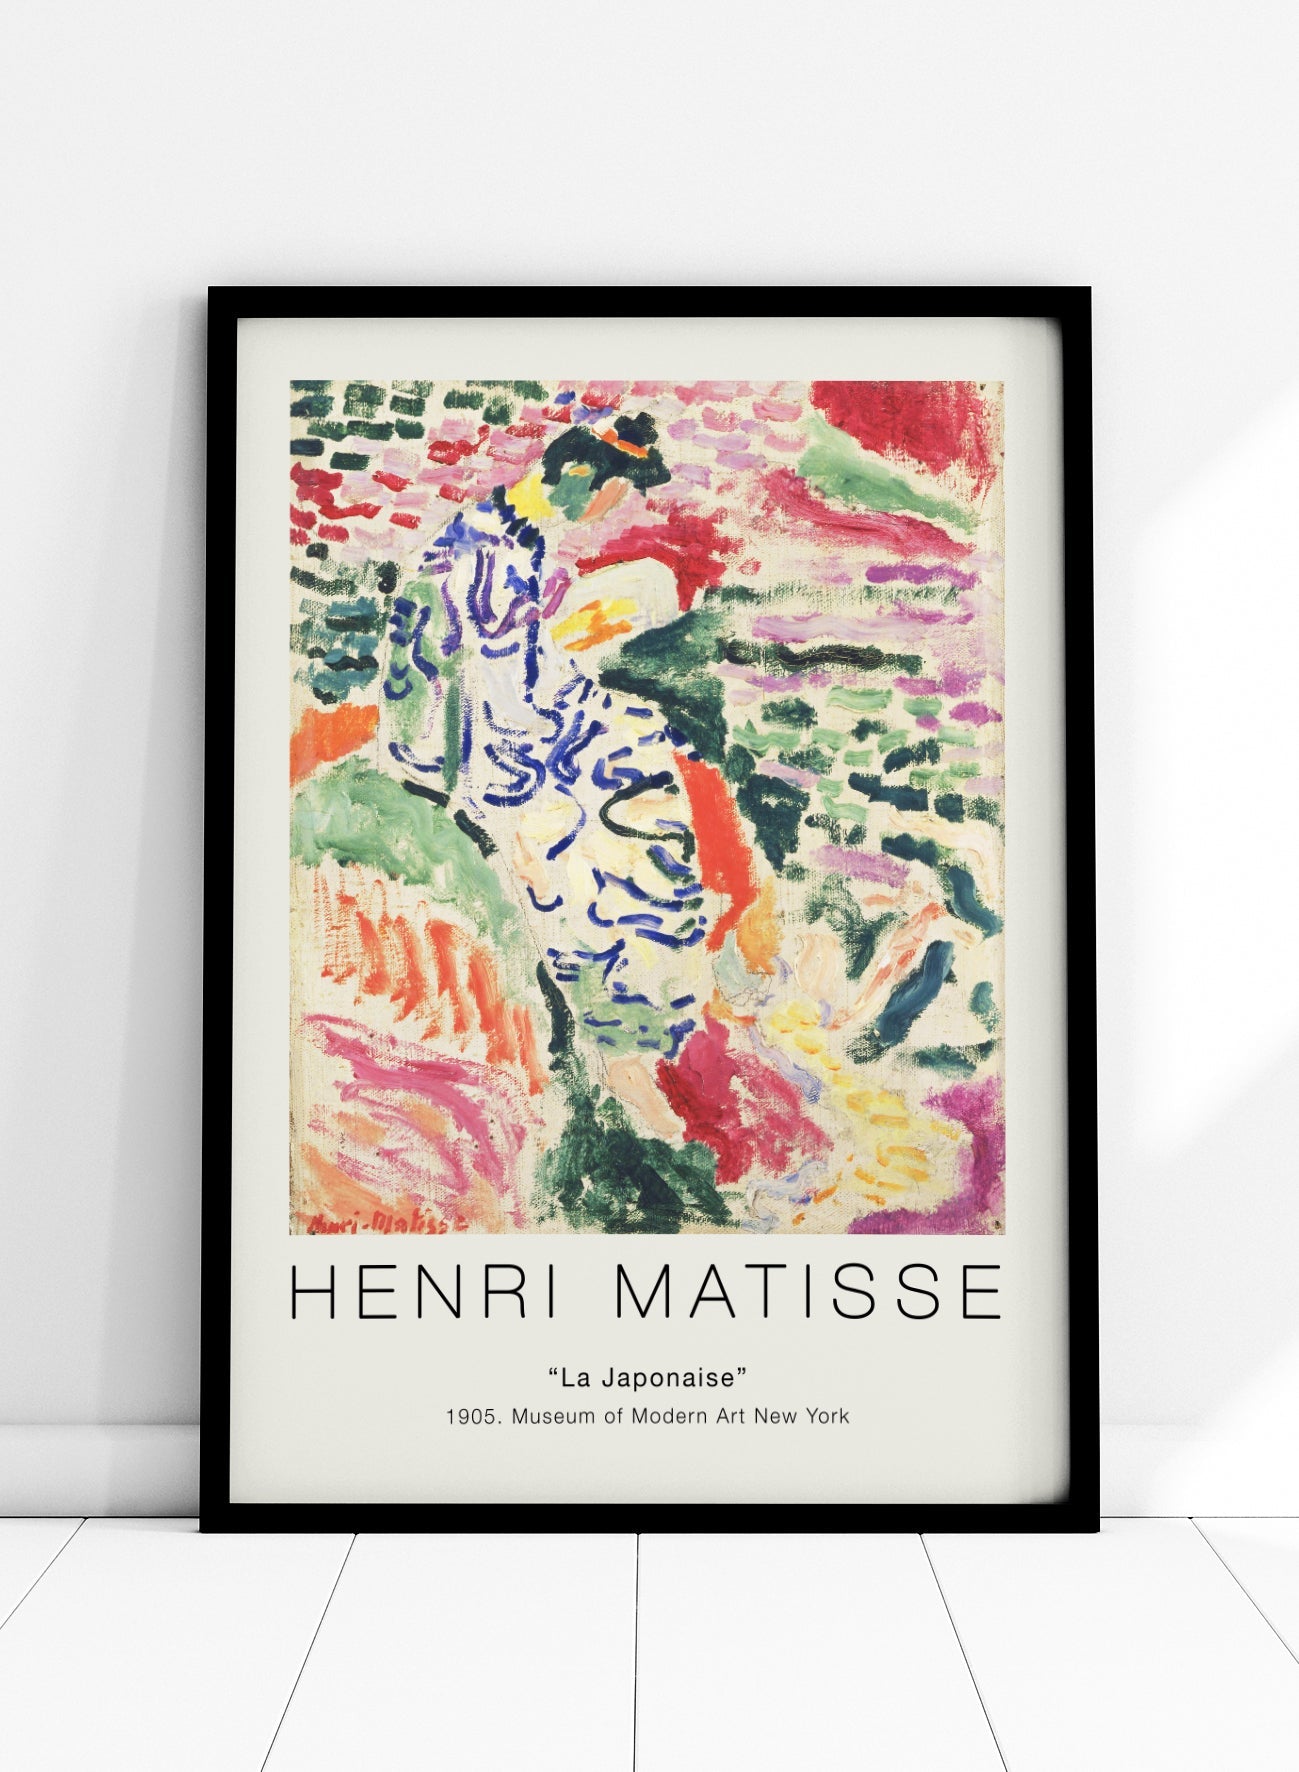 La Japonaise by Henri Matisse - Exhibition Poster I